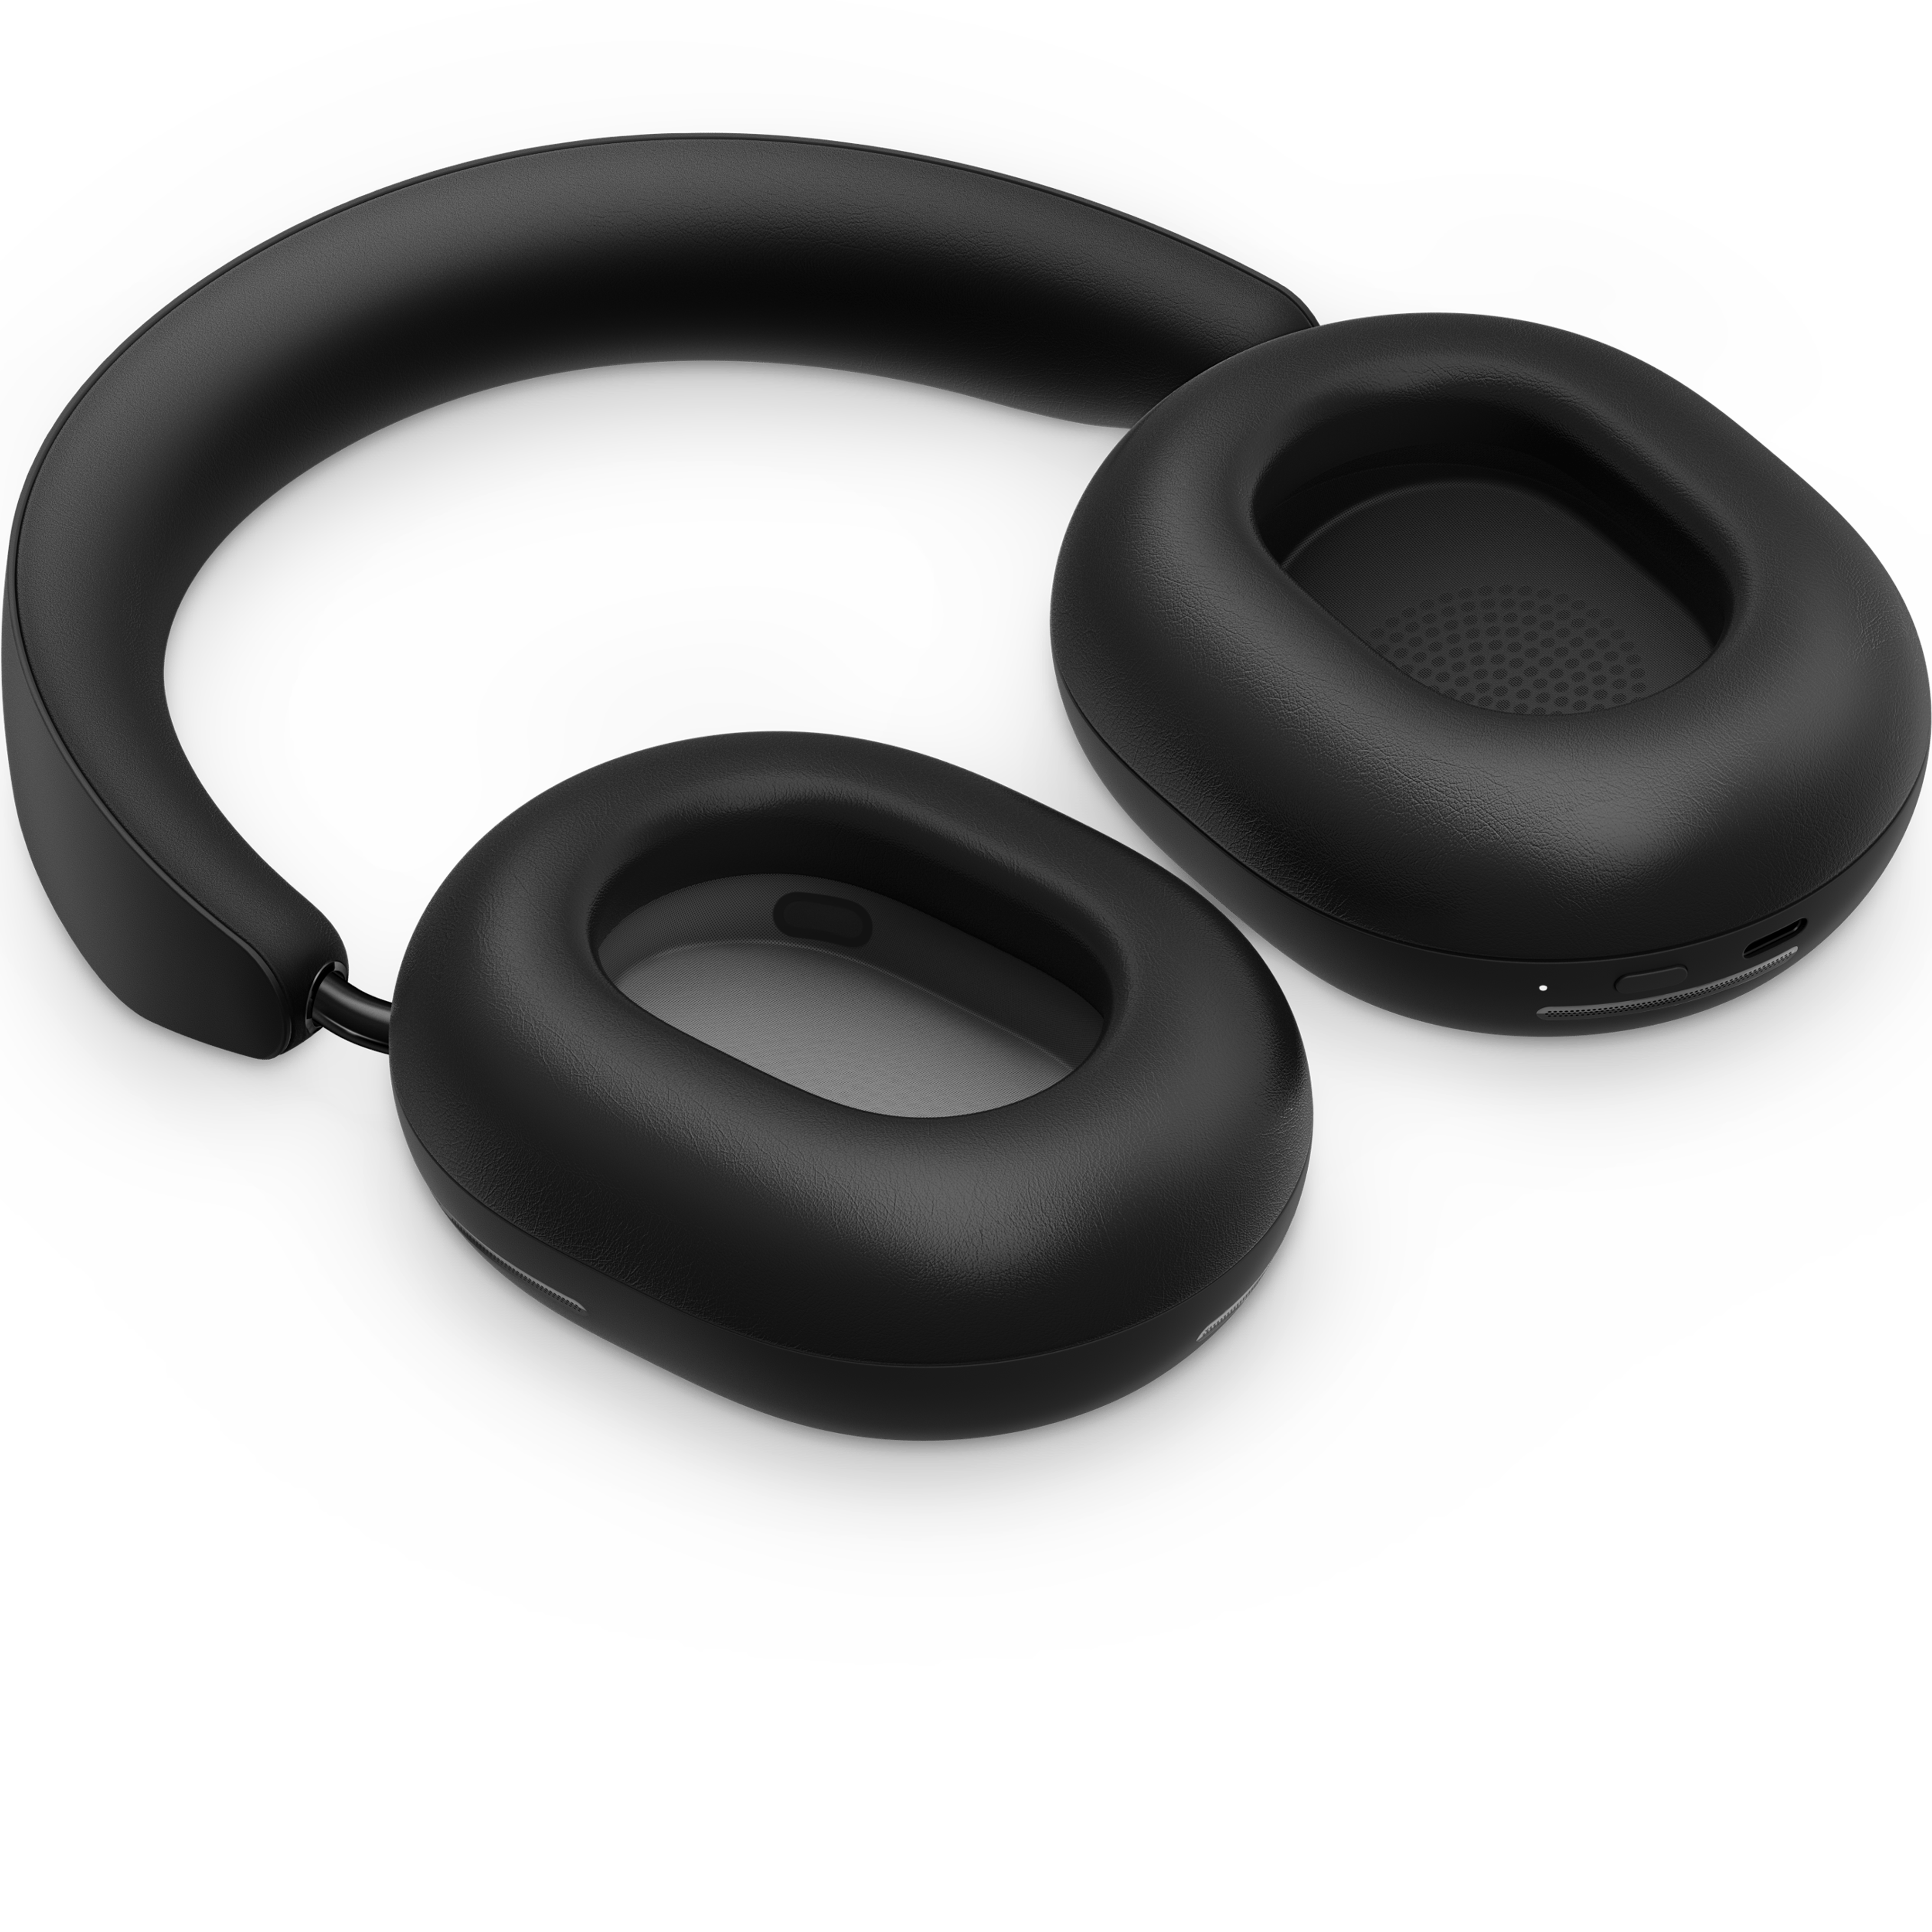 Sonos Ace koptelefoon in zwart, plat liggend met de oorschelpen omhoog gedraaid